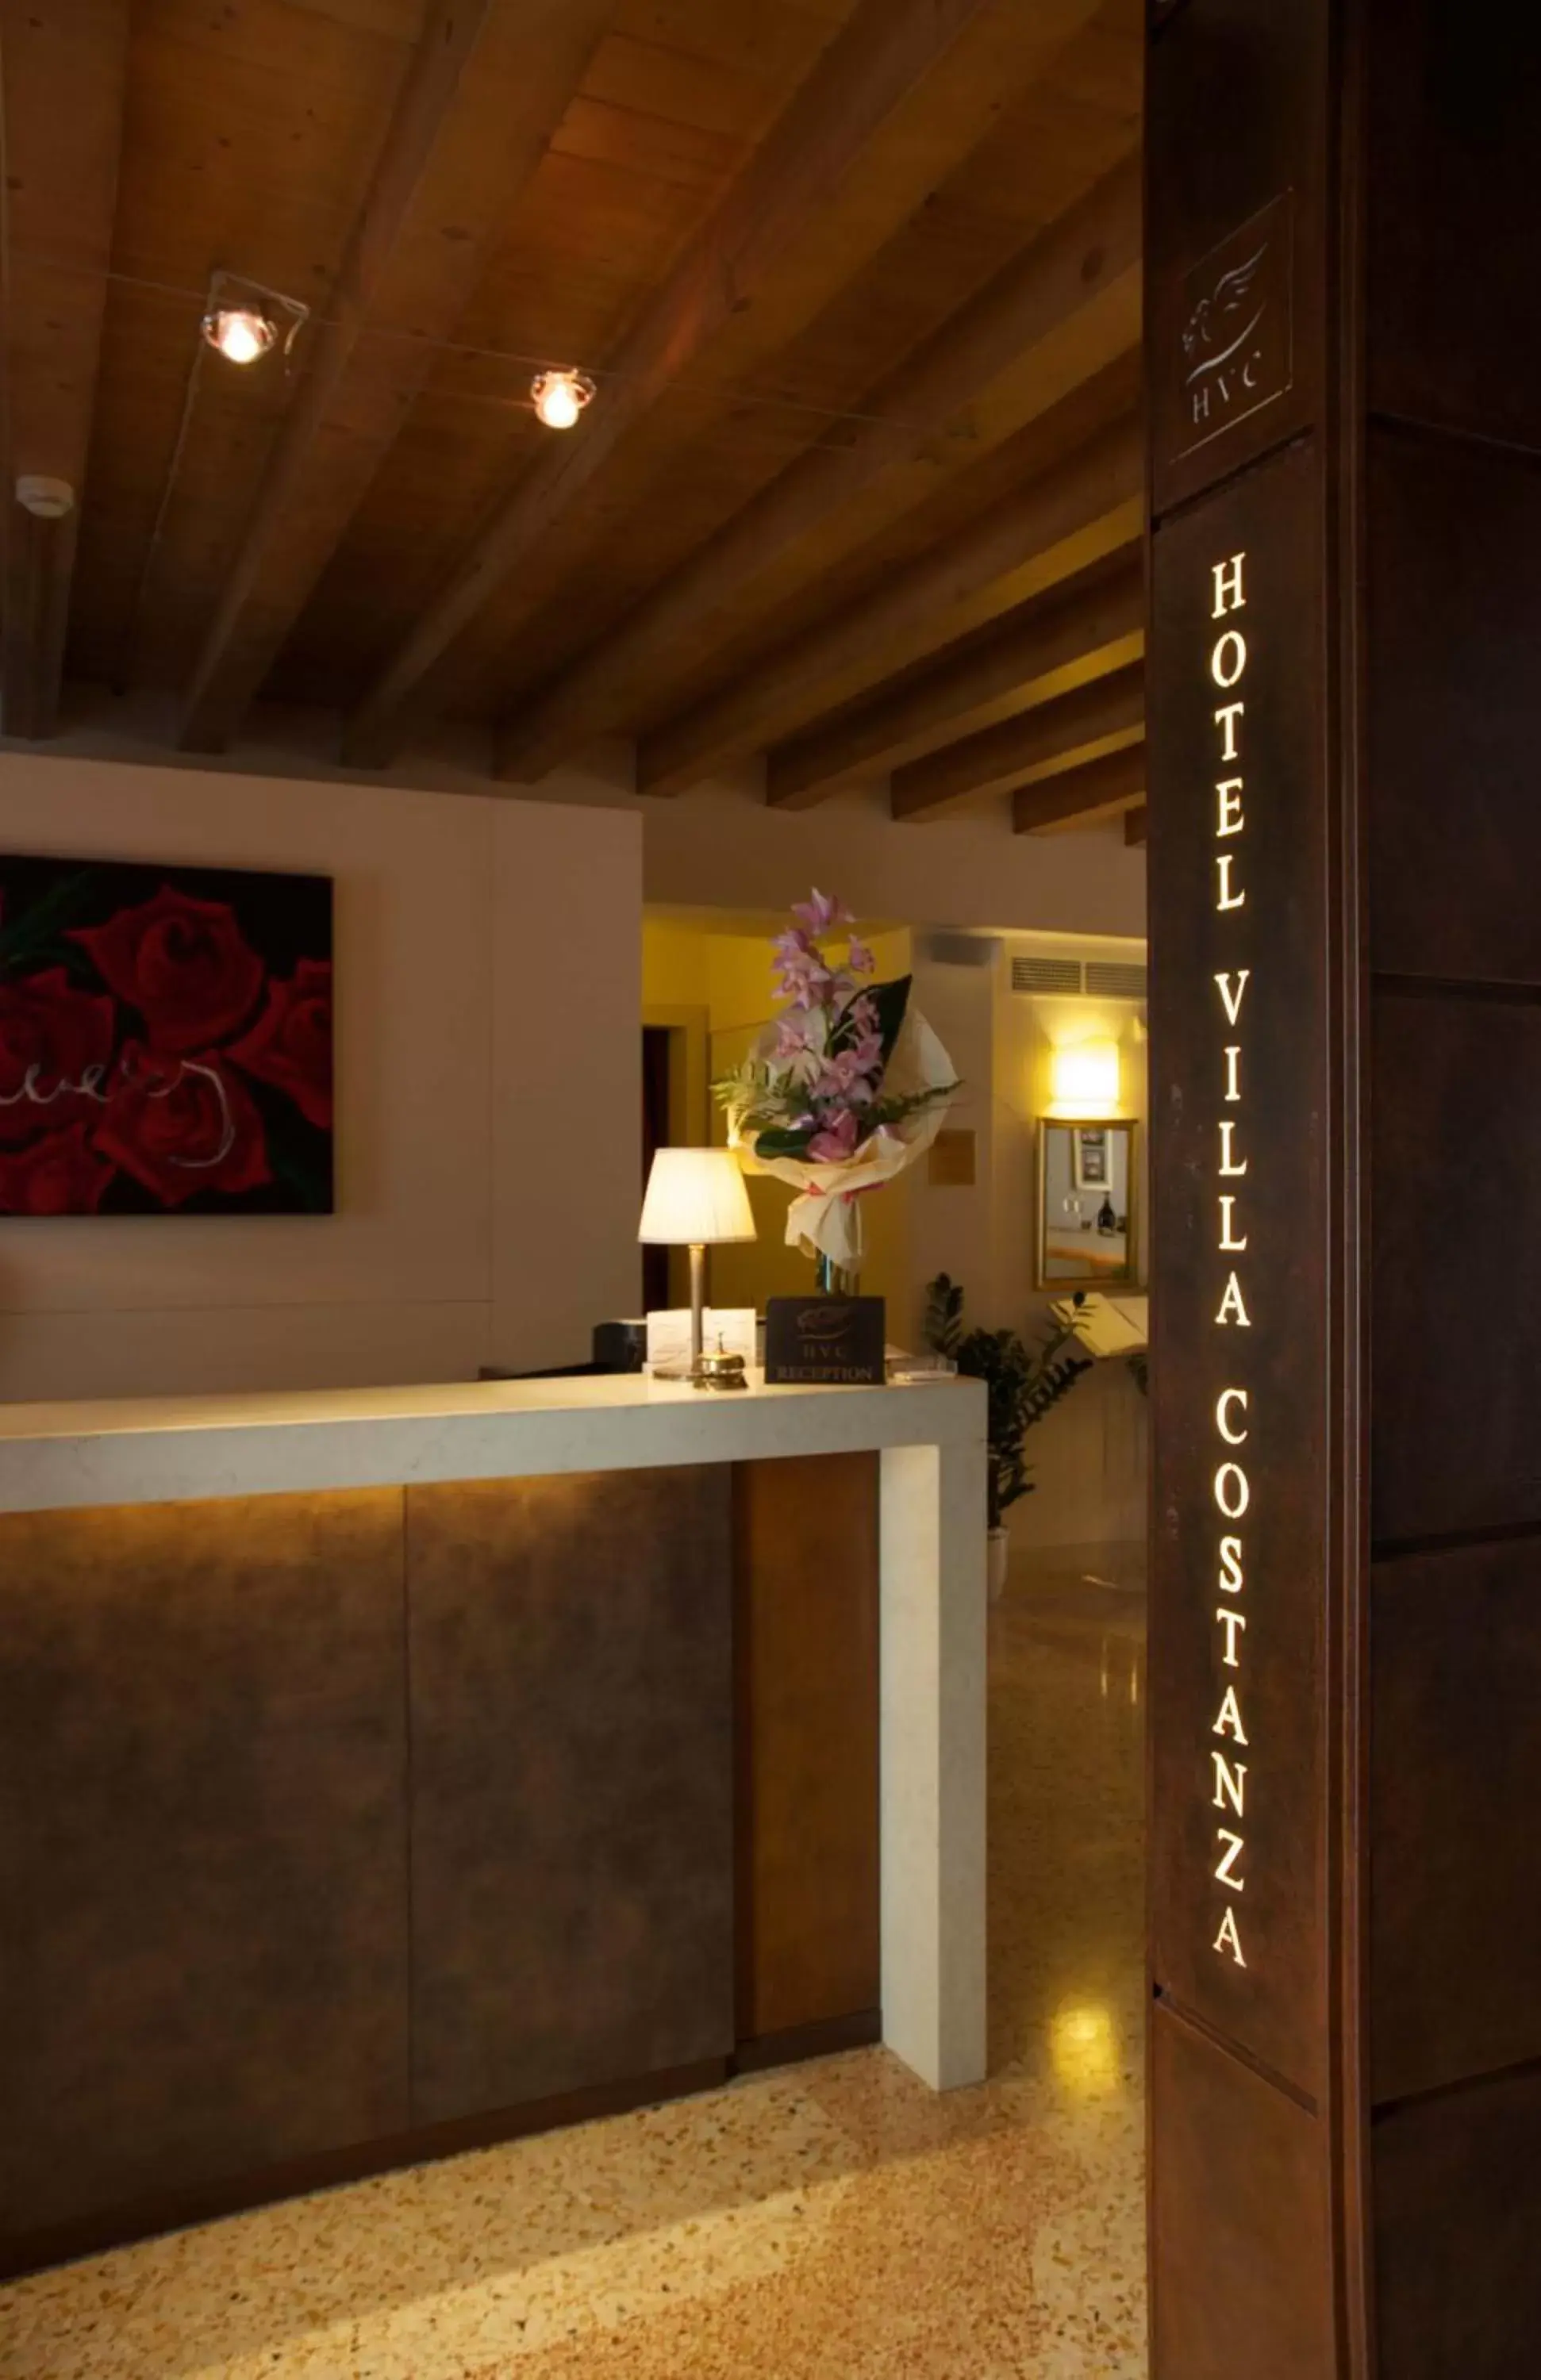 Lobby or reception, Lobby/Reception in UNAWAY Ecohotel Villa Costanza Venezia